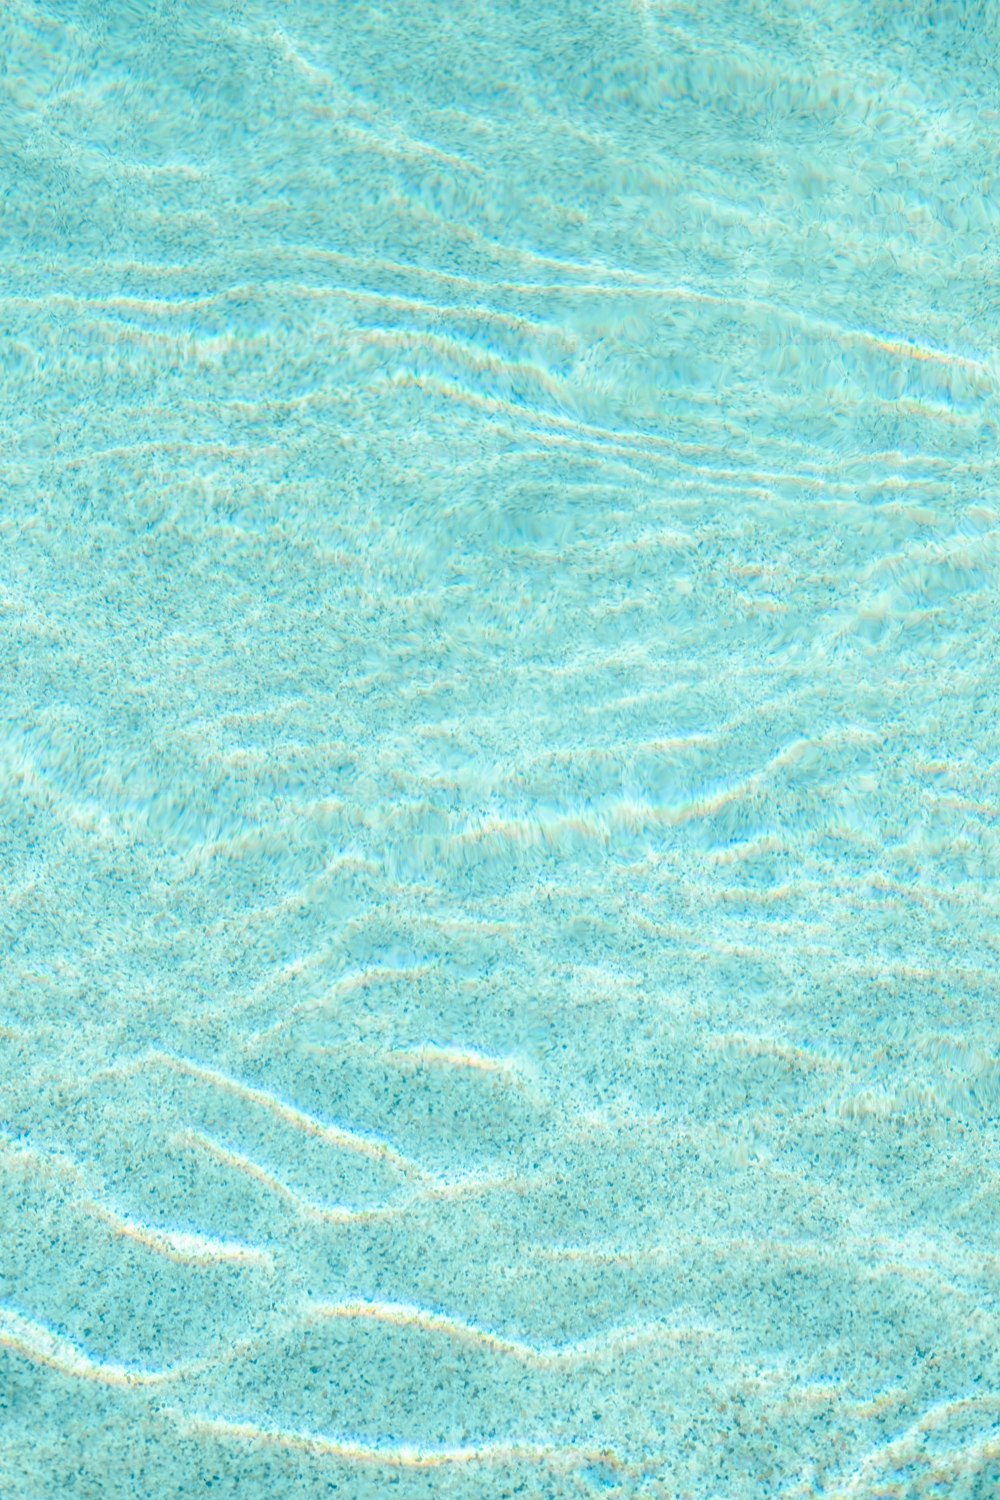 Ein blauer Pool mit klarem Wasser und Wellen